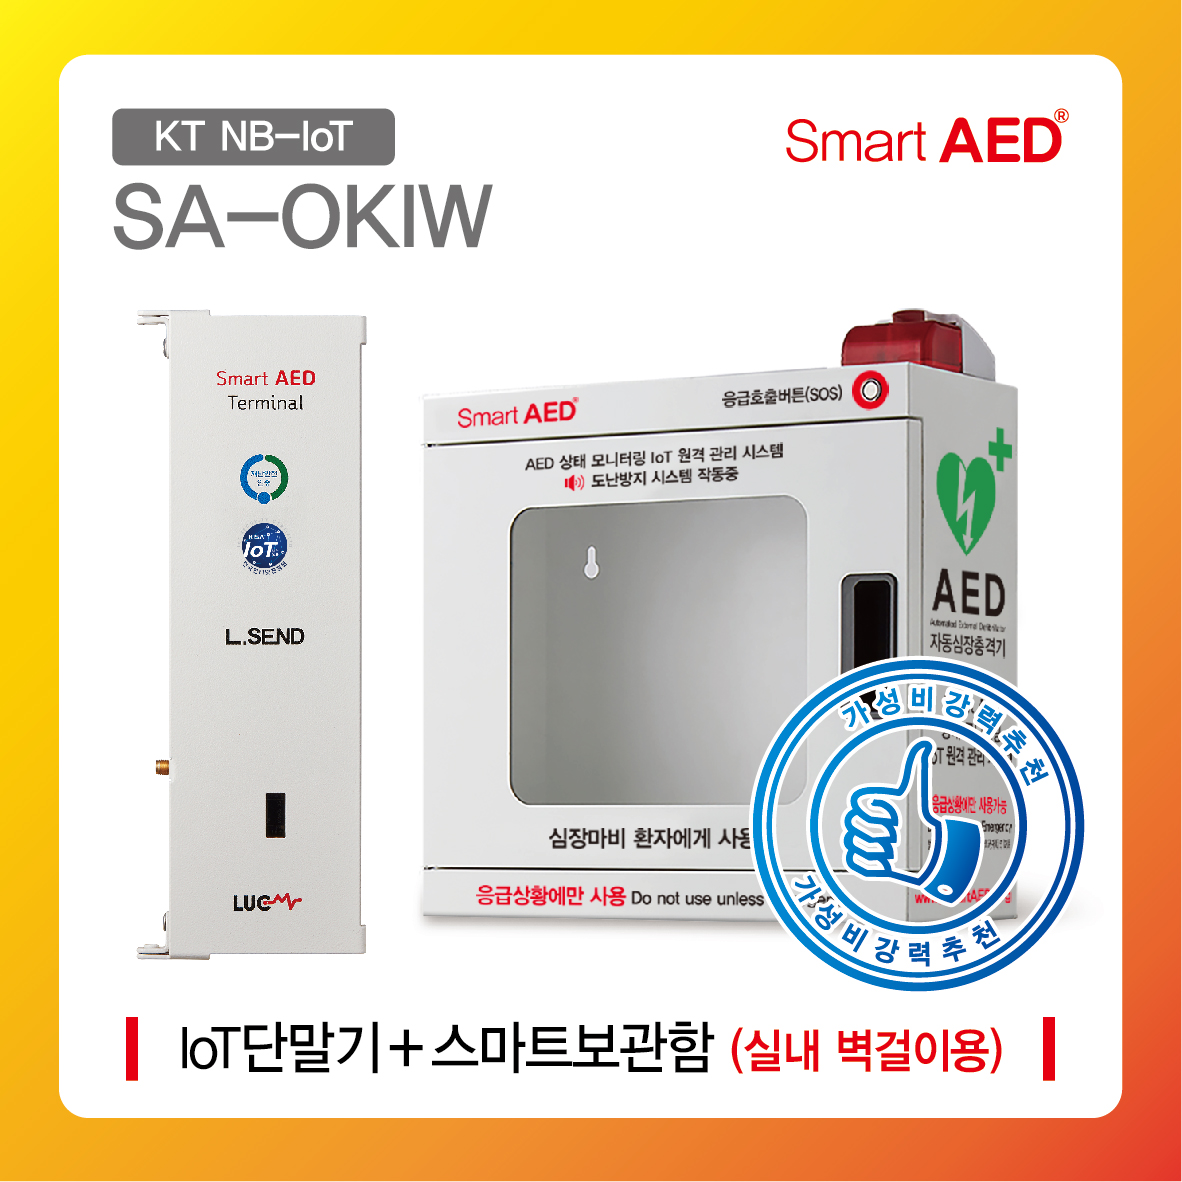 [ SA-OKIW ] 스마트 AED 통합모니터링 장치 및 보관함 ( 실내 벽걸이형)